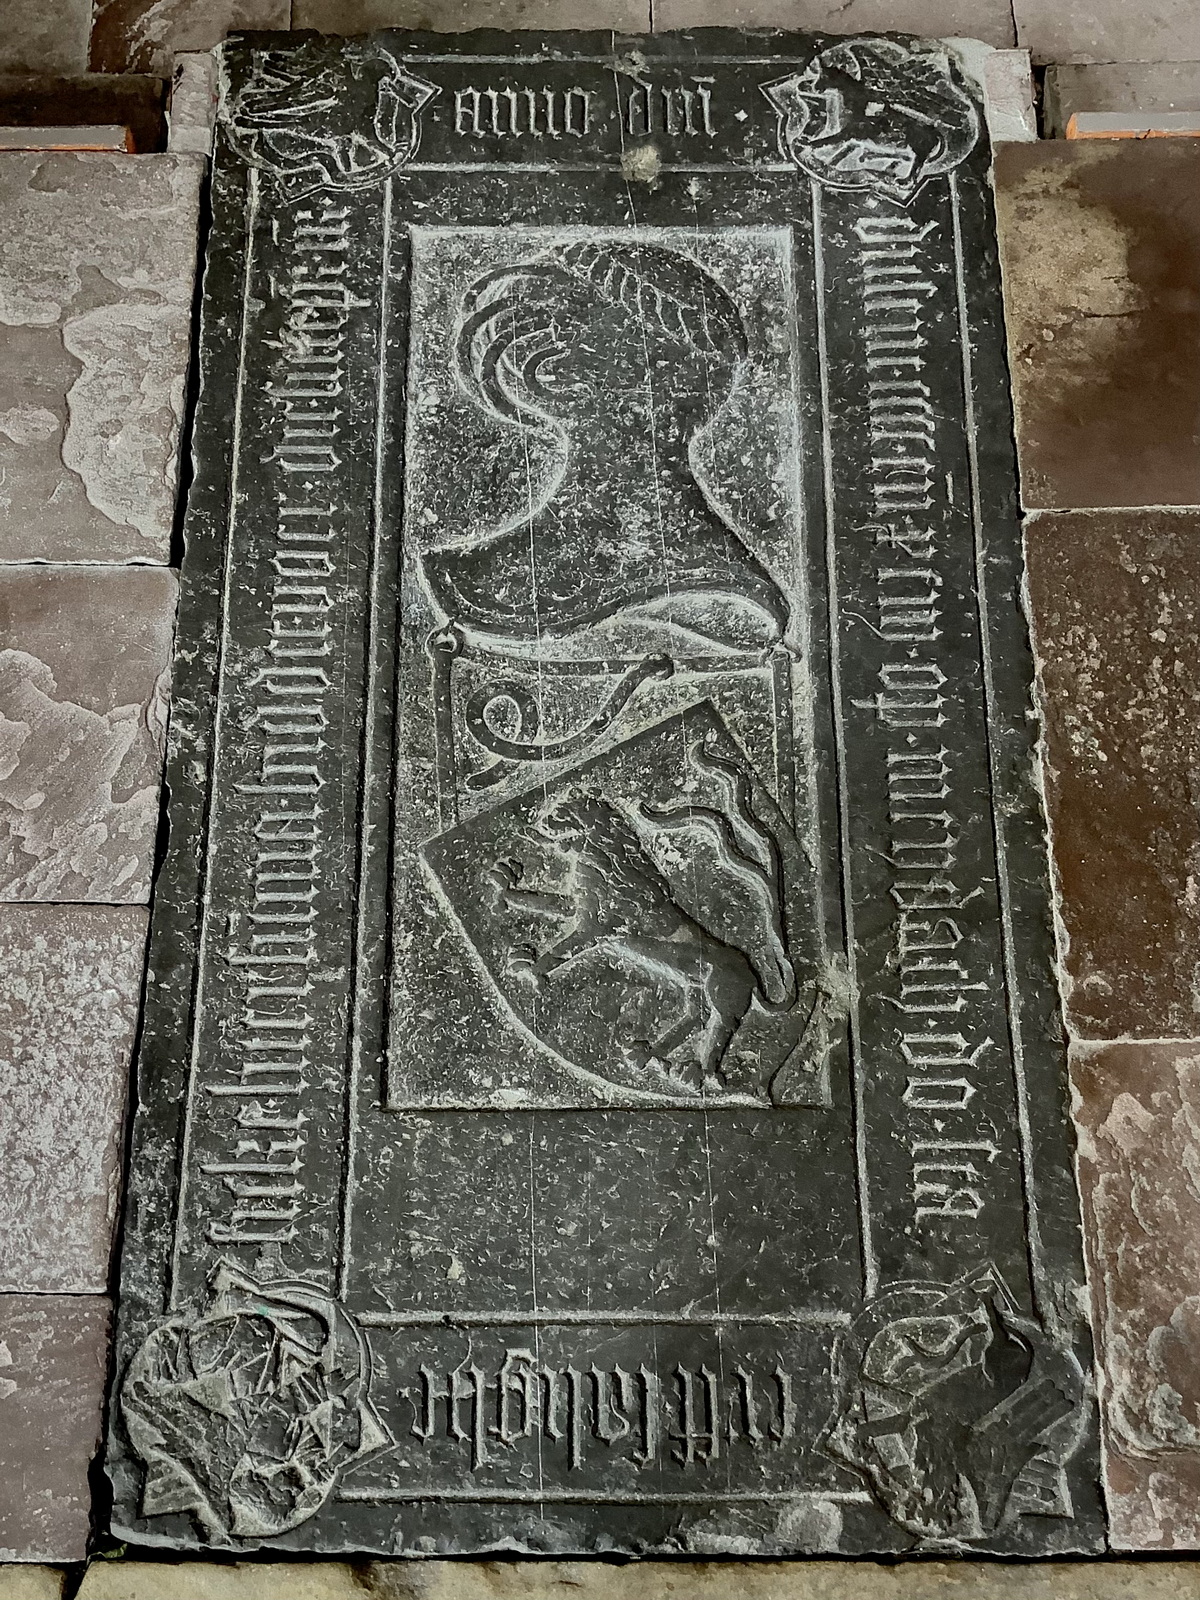 De oudste grafzerk in de kerk is die van de 'Salighe Sicke Luersumma' uit 1491. Randschrift: ANNO DOMINI DUSENT CCCC ENDE XCIII OP MEYDACH DO STAERFF SALIGHE SICKE LUERSUMMA. BIDDET VOER DIE SIELE PR. Op het middenvak van de steen een heel groot schuingeplaatste helm met eronder een schuingeplaats schild met een klimmende leeuw met gespleten staart. In de hoeken van de zerk vier kleine cartouches met afbeeldingen.Foto: ©Jur Kuipers, 2021.